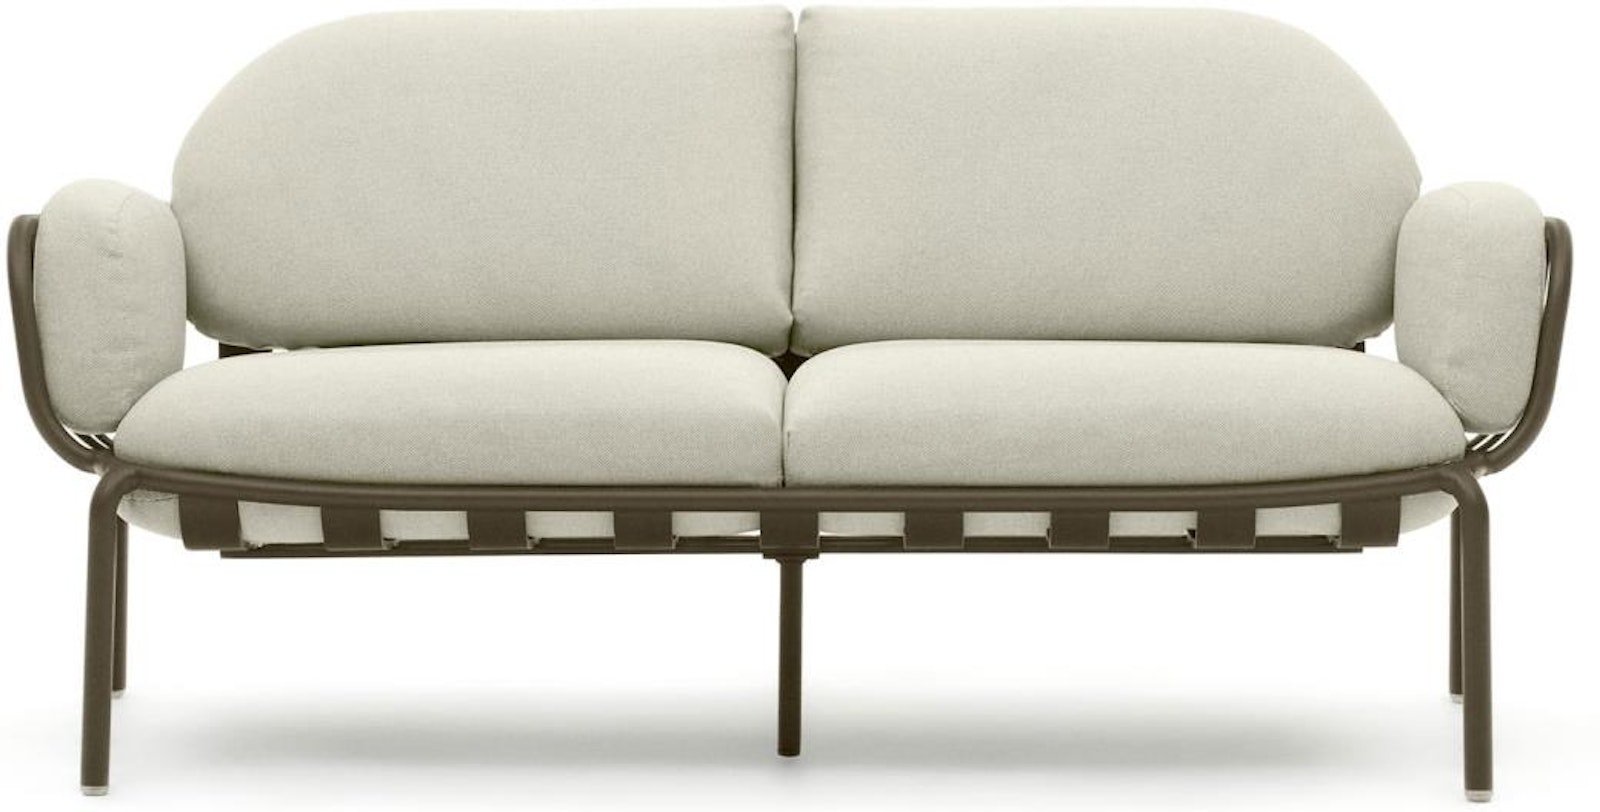 Joncols, Udendørs 2-personers sofa, moderne, nordisk, metal by Laforma (H: 72 cm. x B: 164 cm. x L: 80 cm., Grøn/Beige)